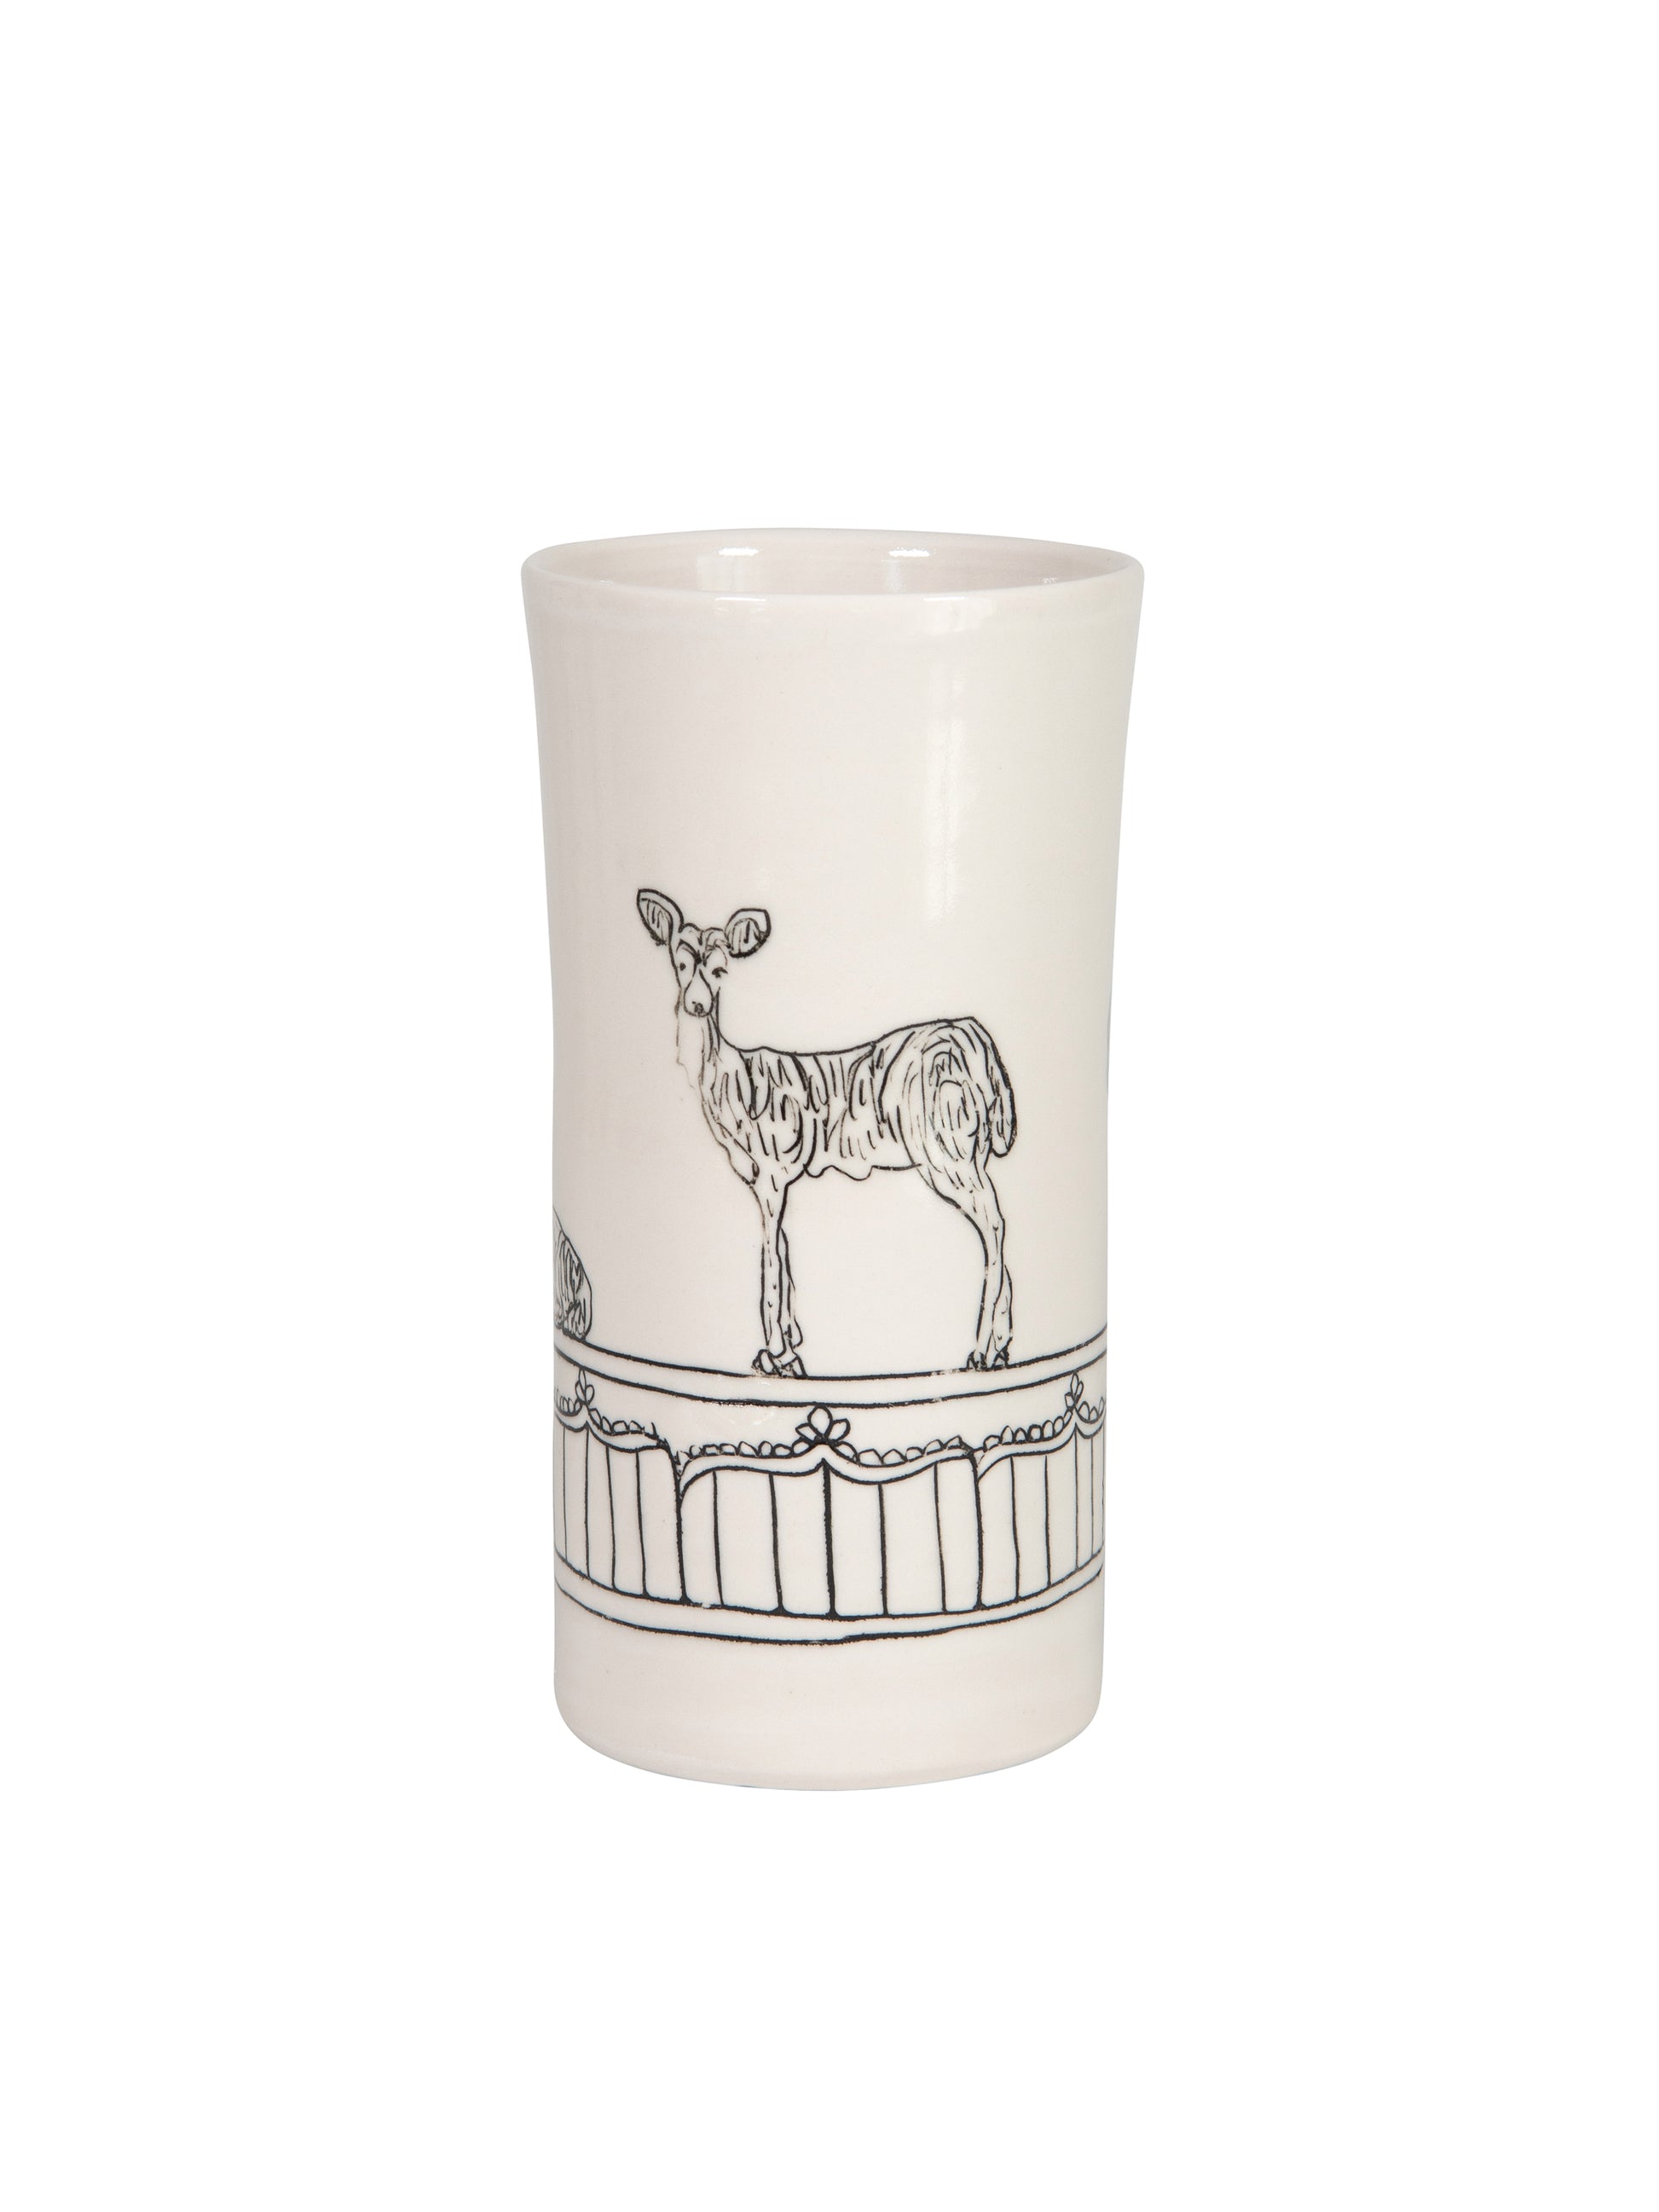 WT Hope and Mary Woodland Animal Tall Vase Deer Weston table